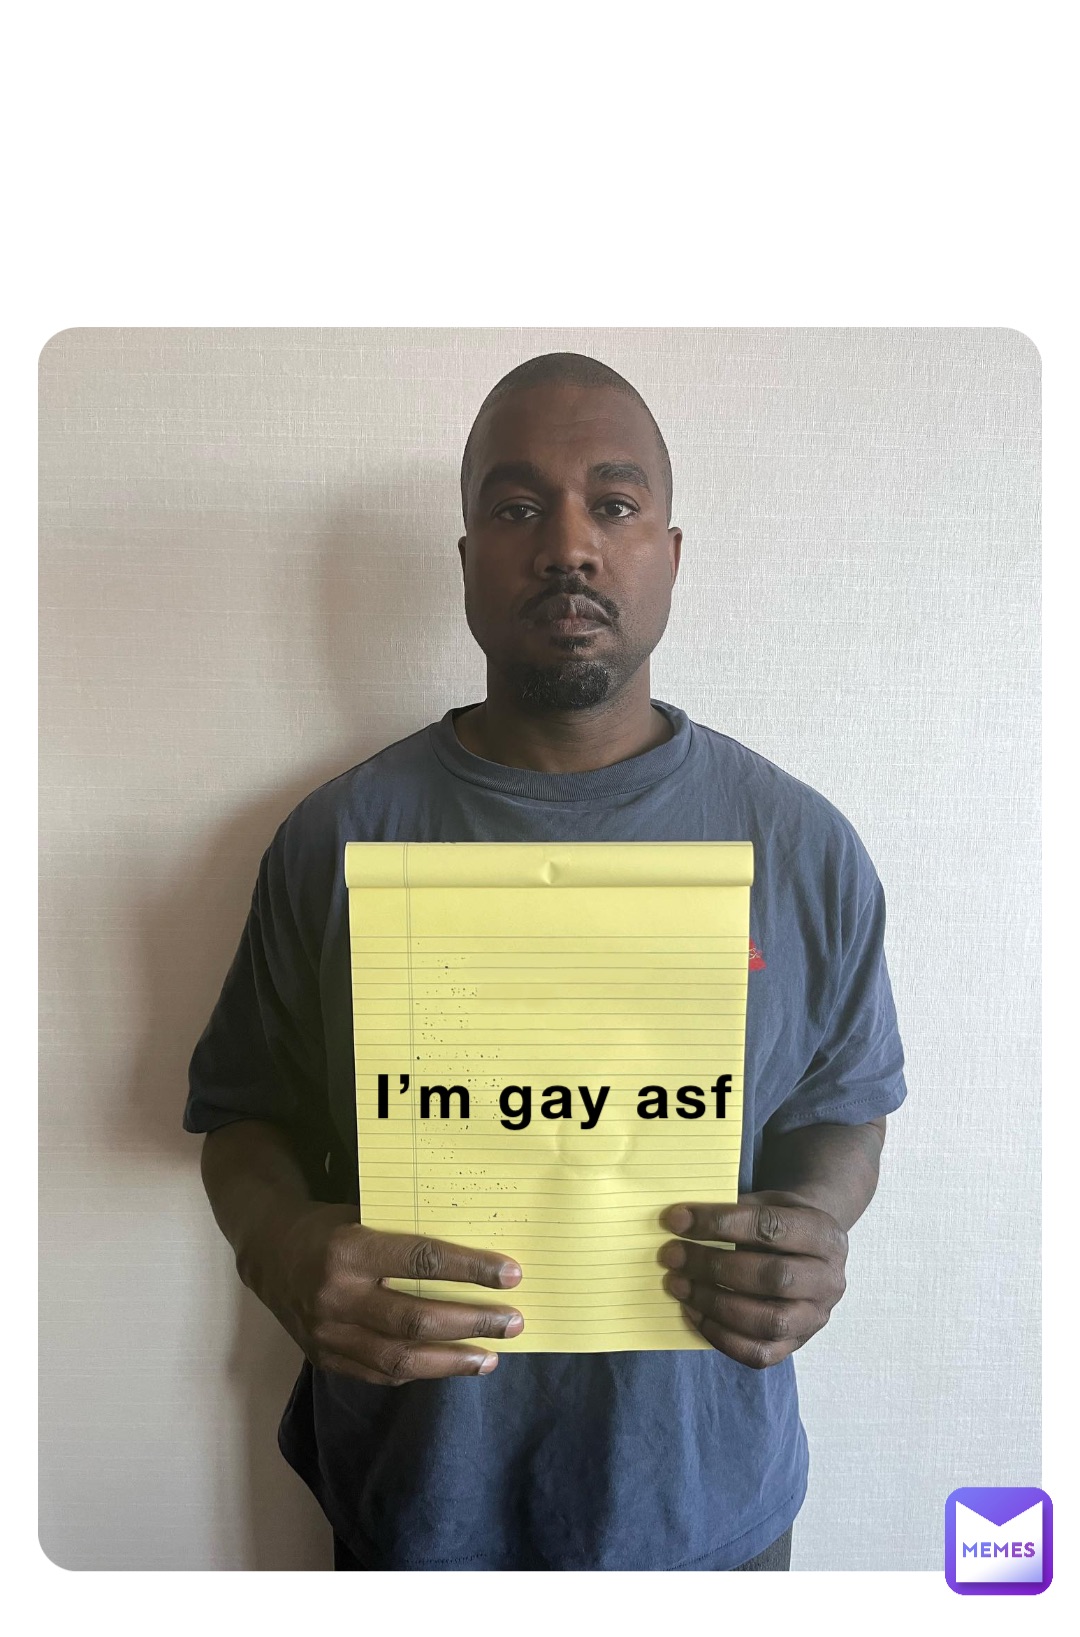 I’m gay asf